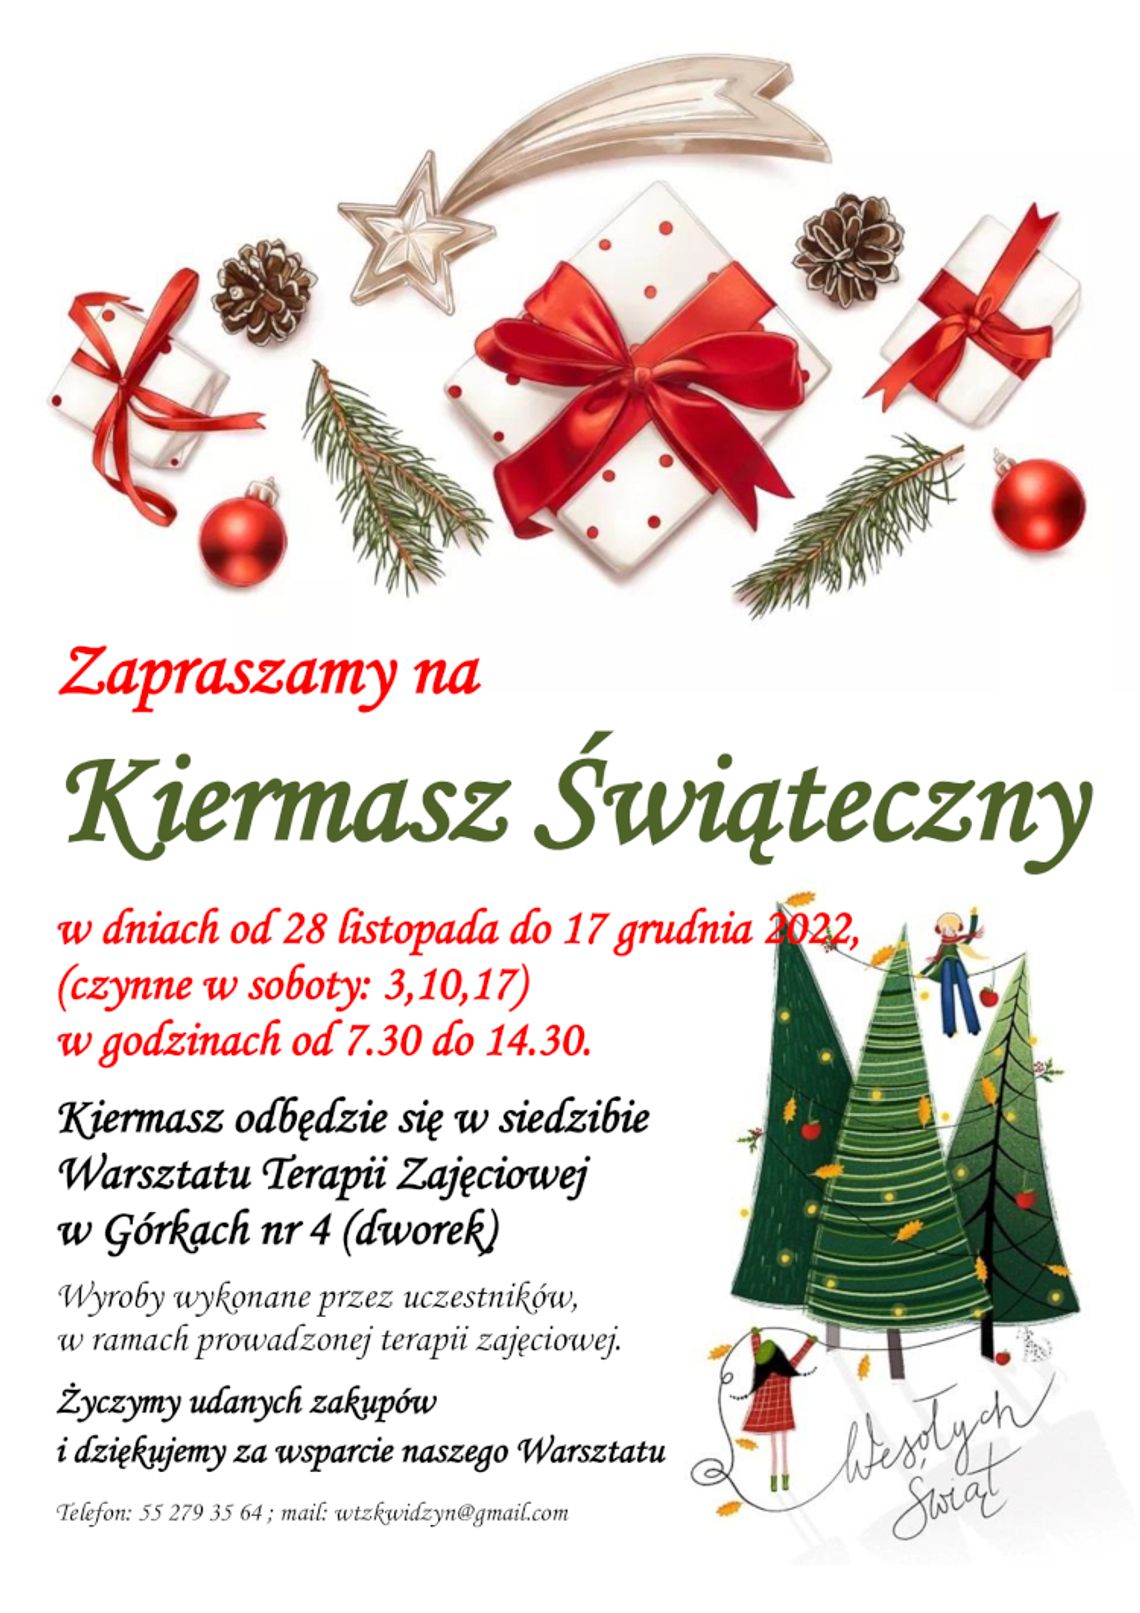 Kwidzyński Kiermasz Świąteczny rozpocznie się 28 listopada